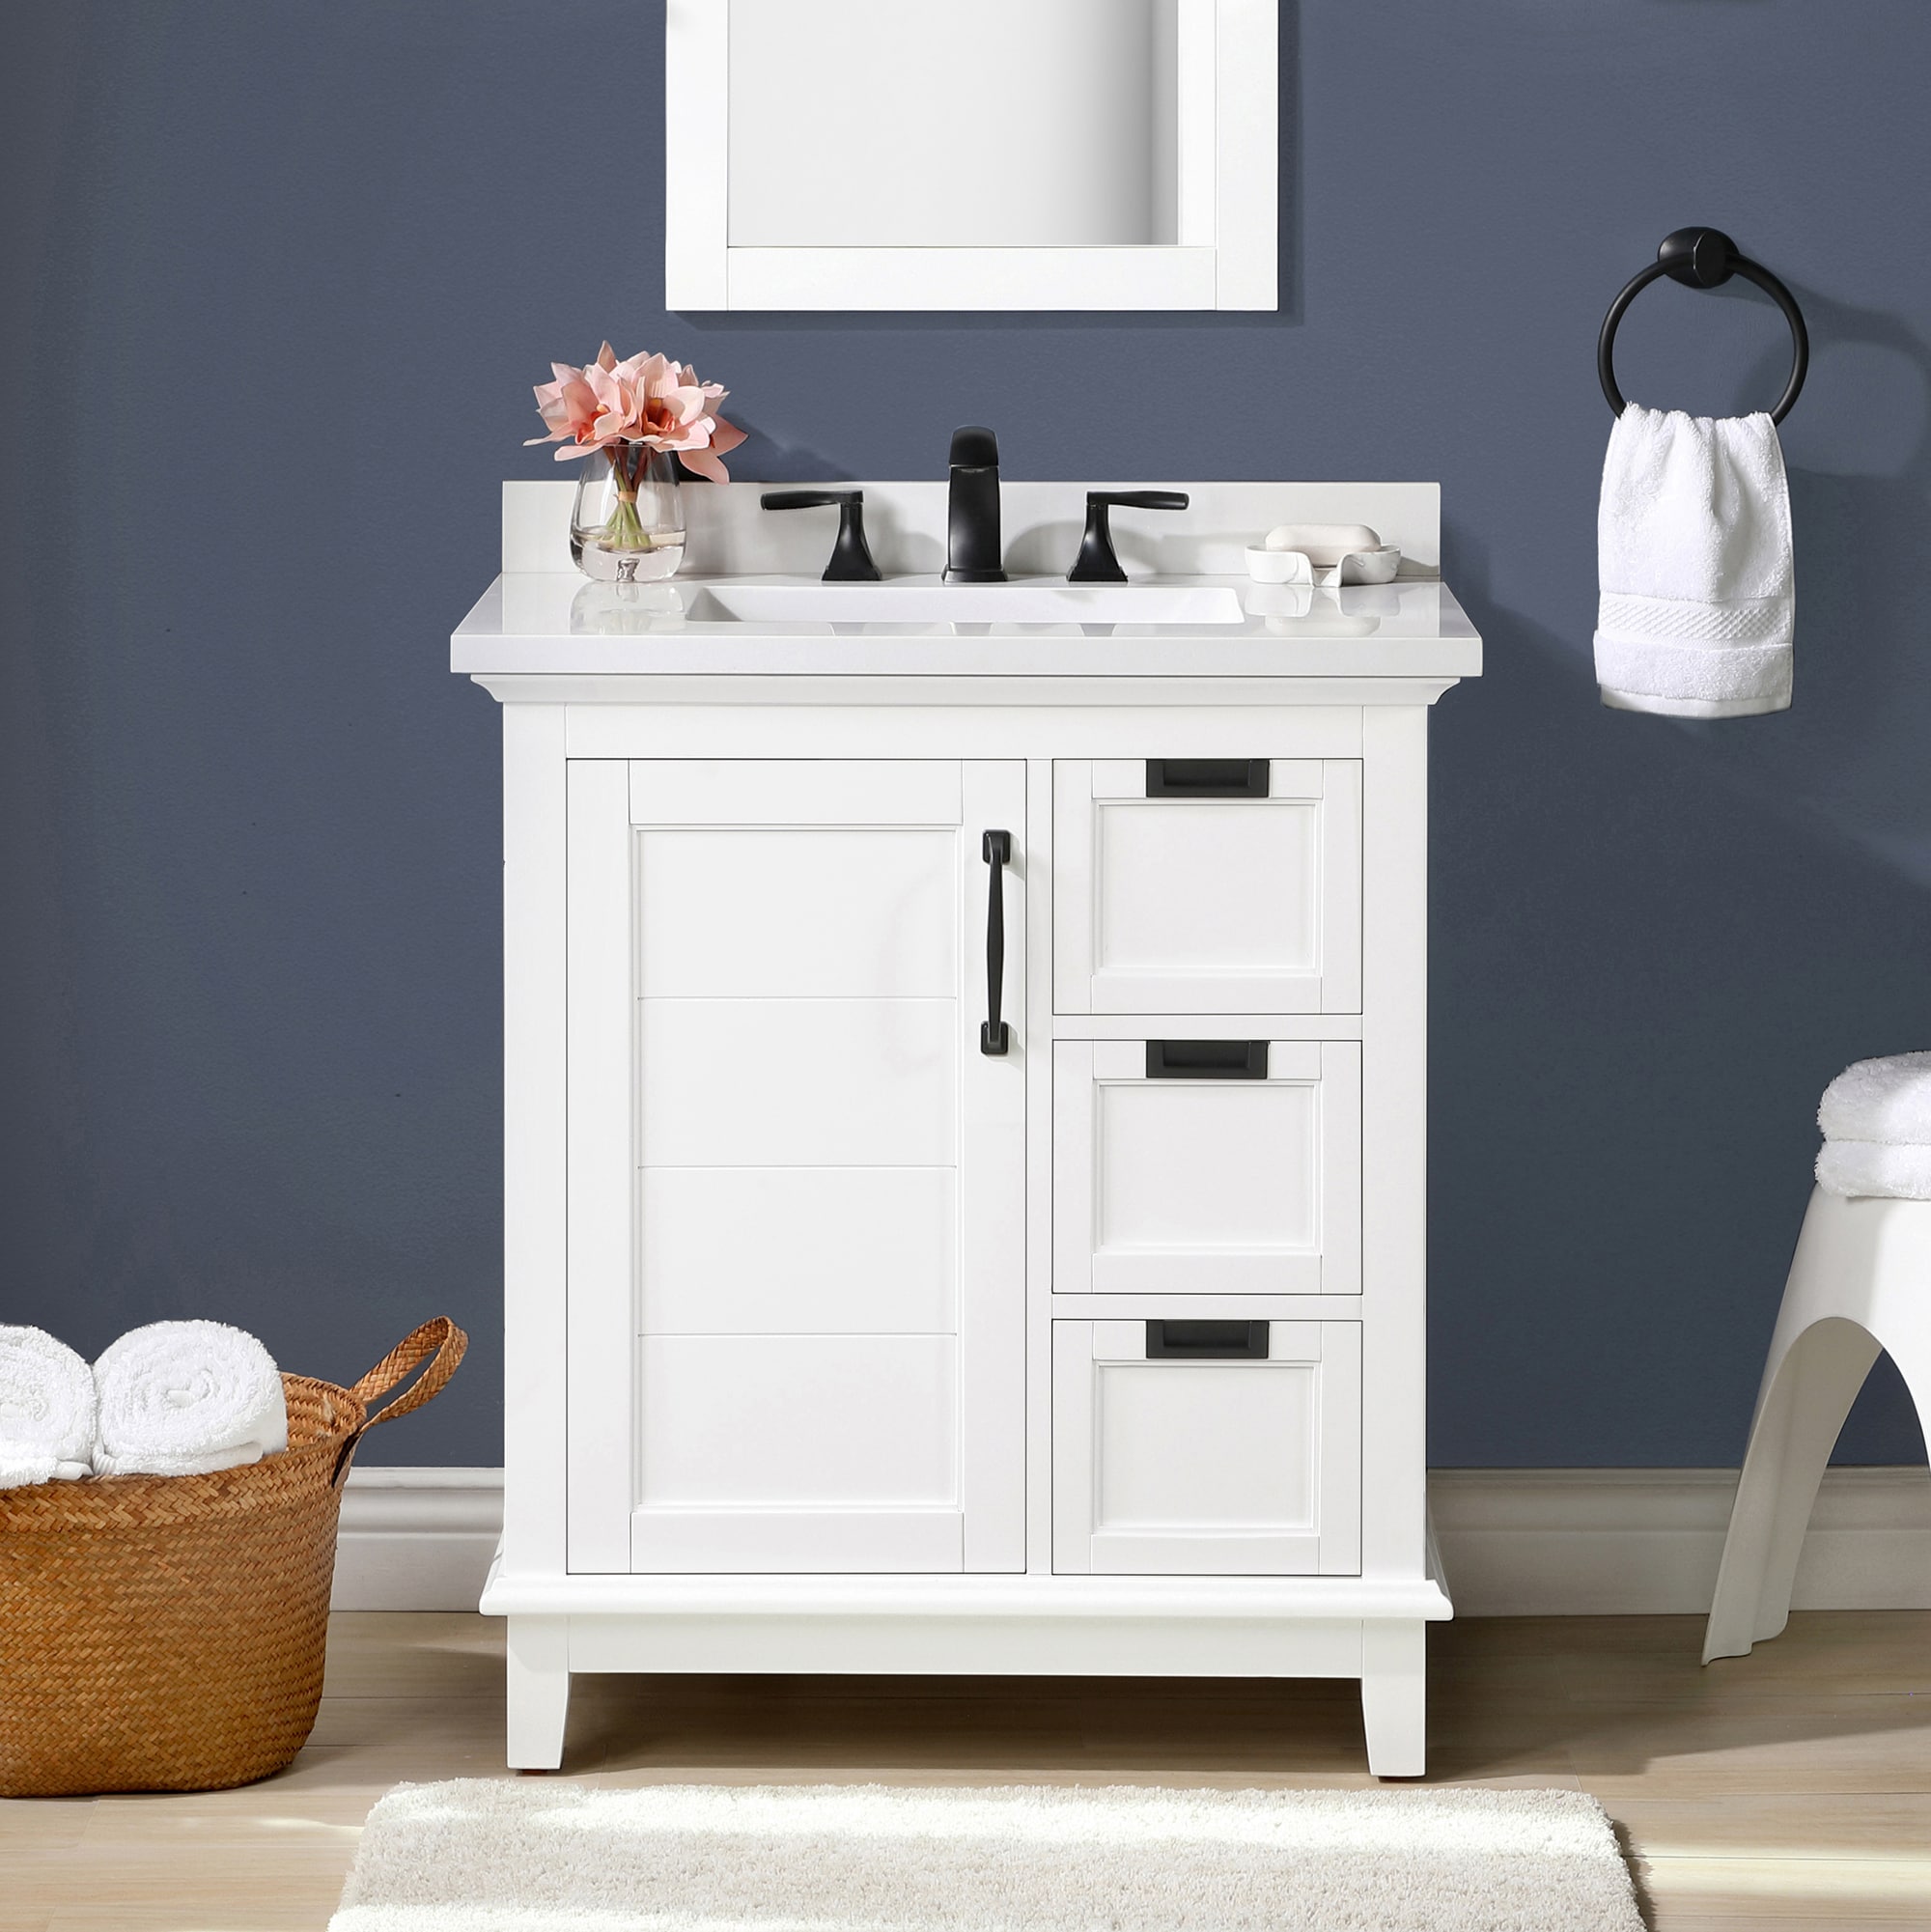 allen + roth clarita 30-in white undermount single sink bathroom